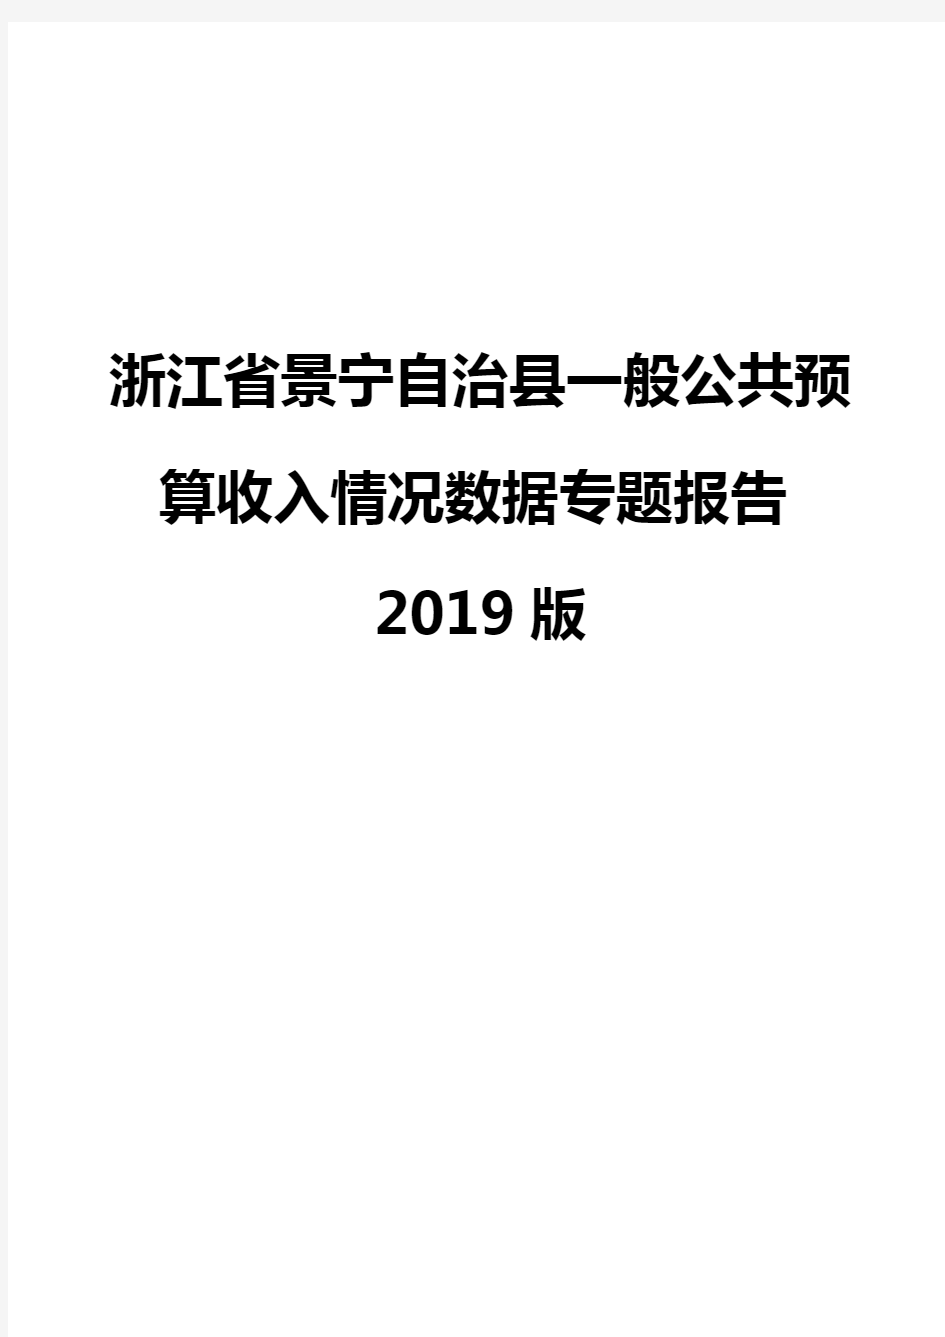 浙江省景宁自治县一般公共预算收入情况数据专题报告2019版